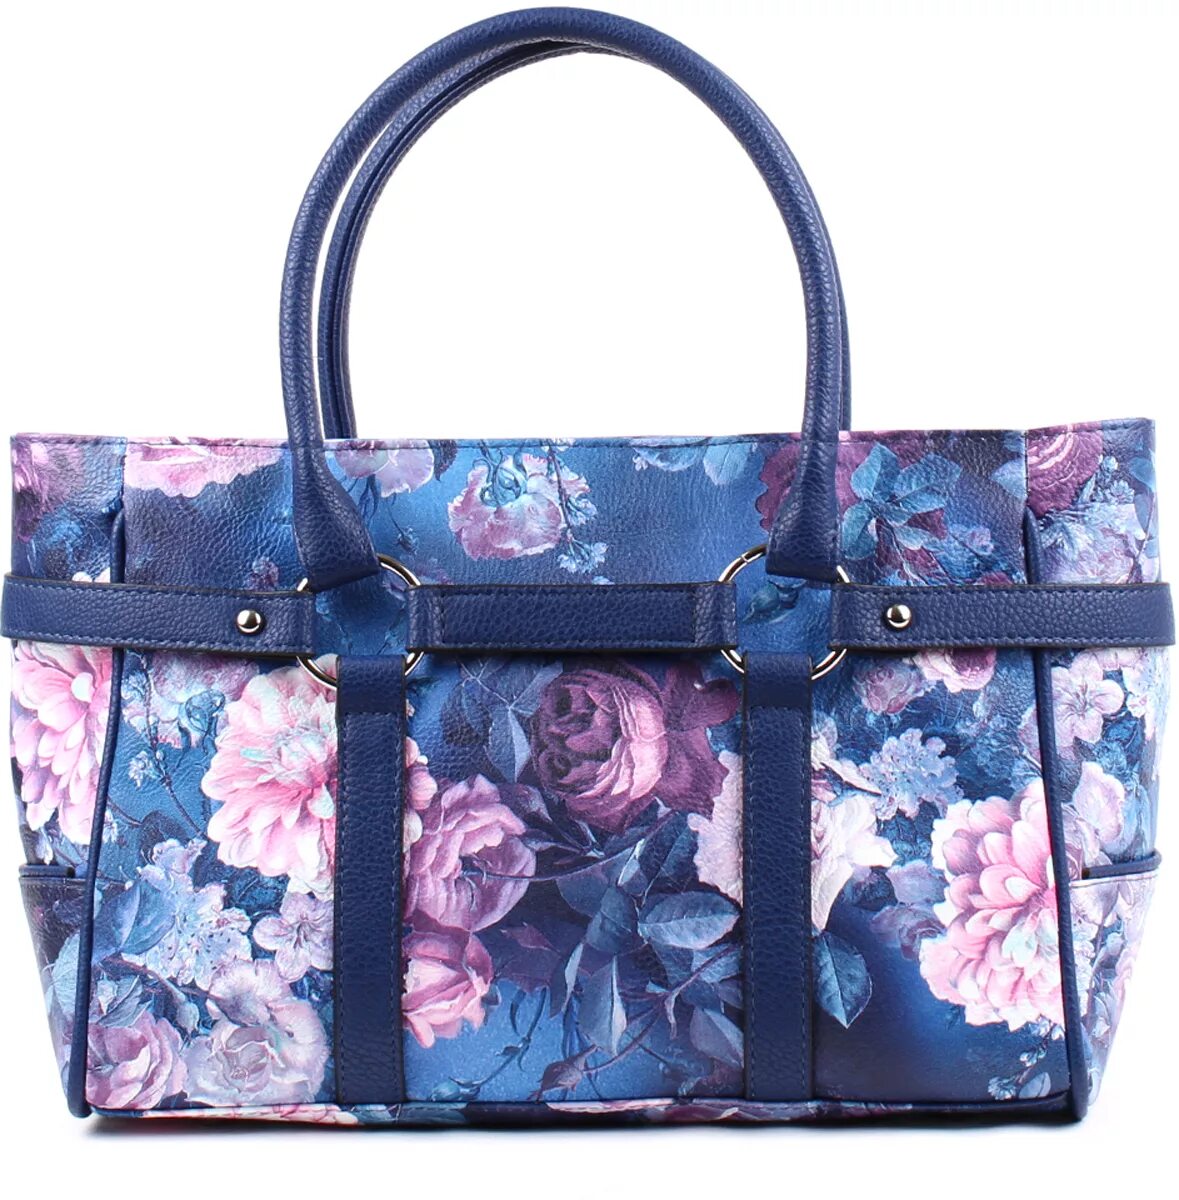 Каталоги магазинов сумок спб. Цветные сумки женские. Синяя сумочка женская. Сумка синяя с цветами. Сумки женские синего цвета.